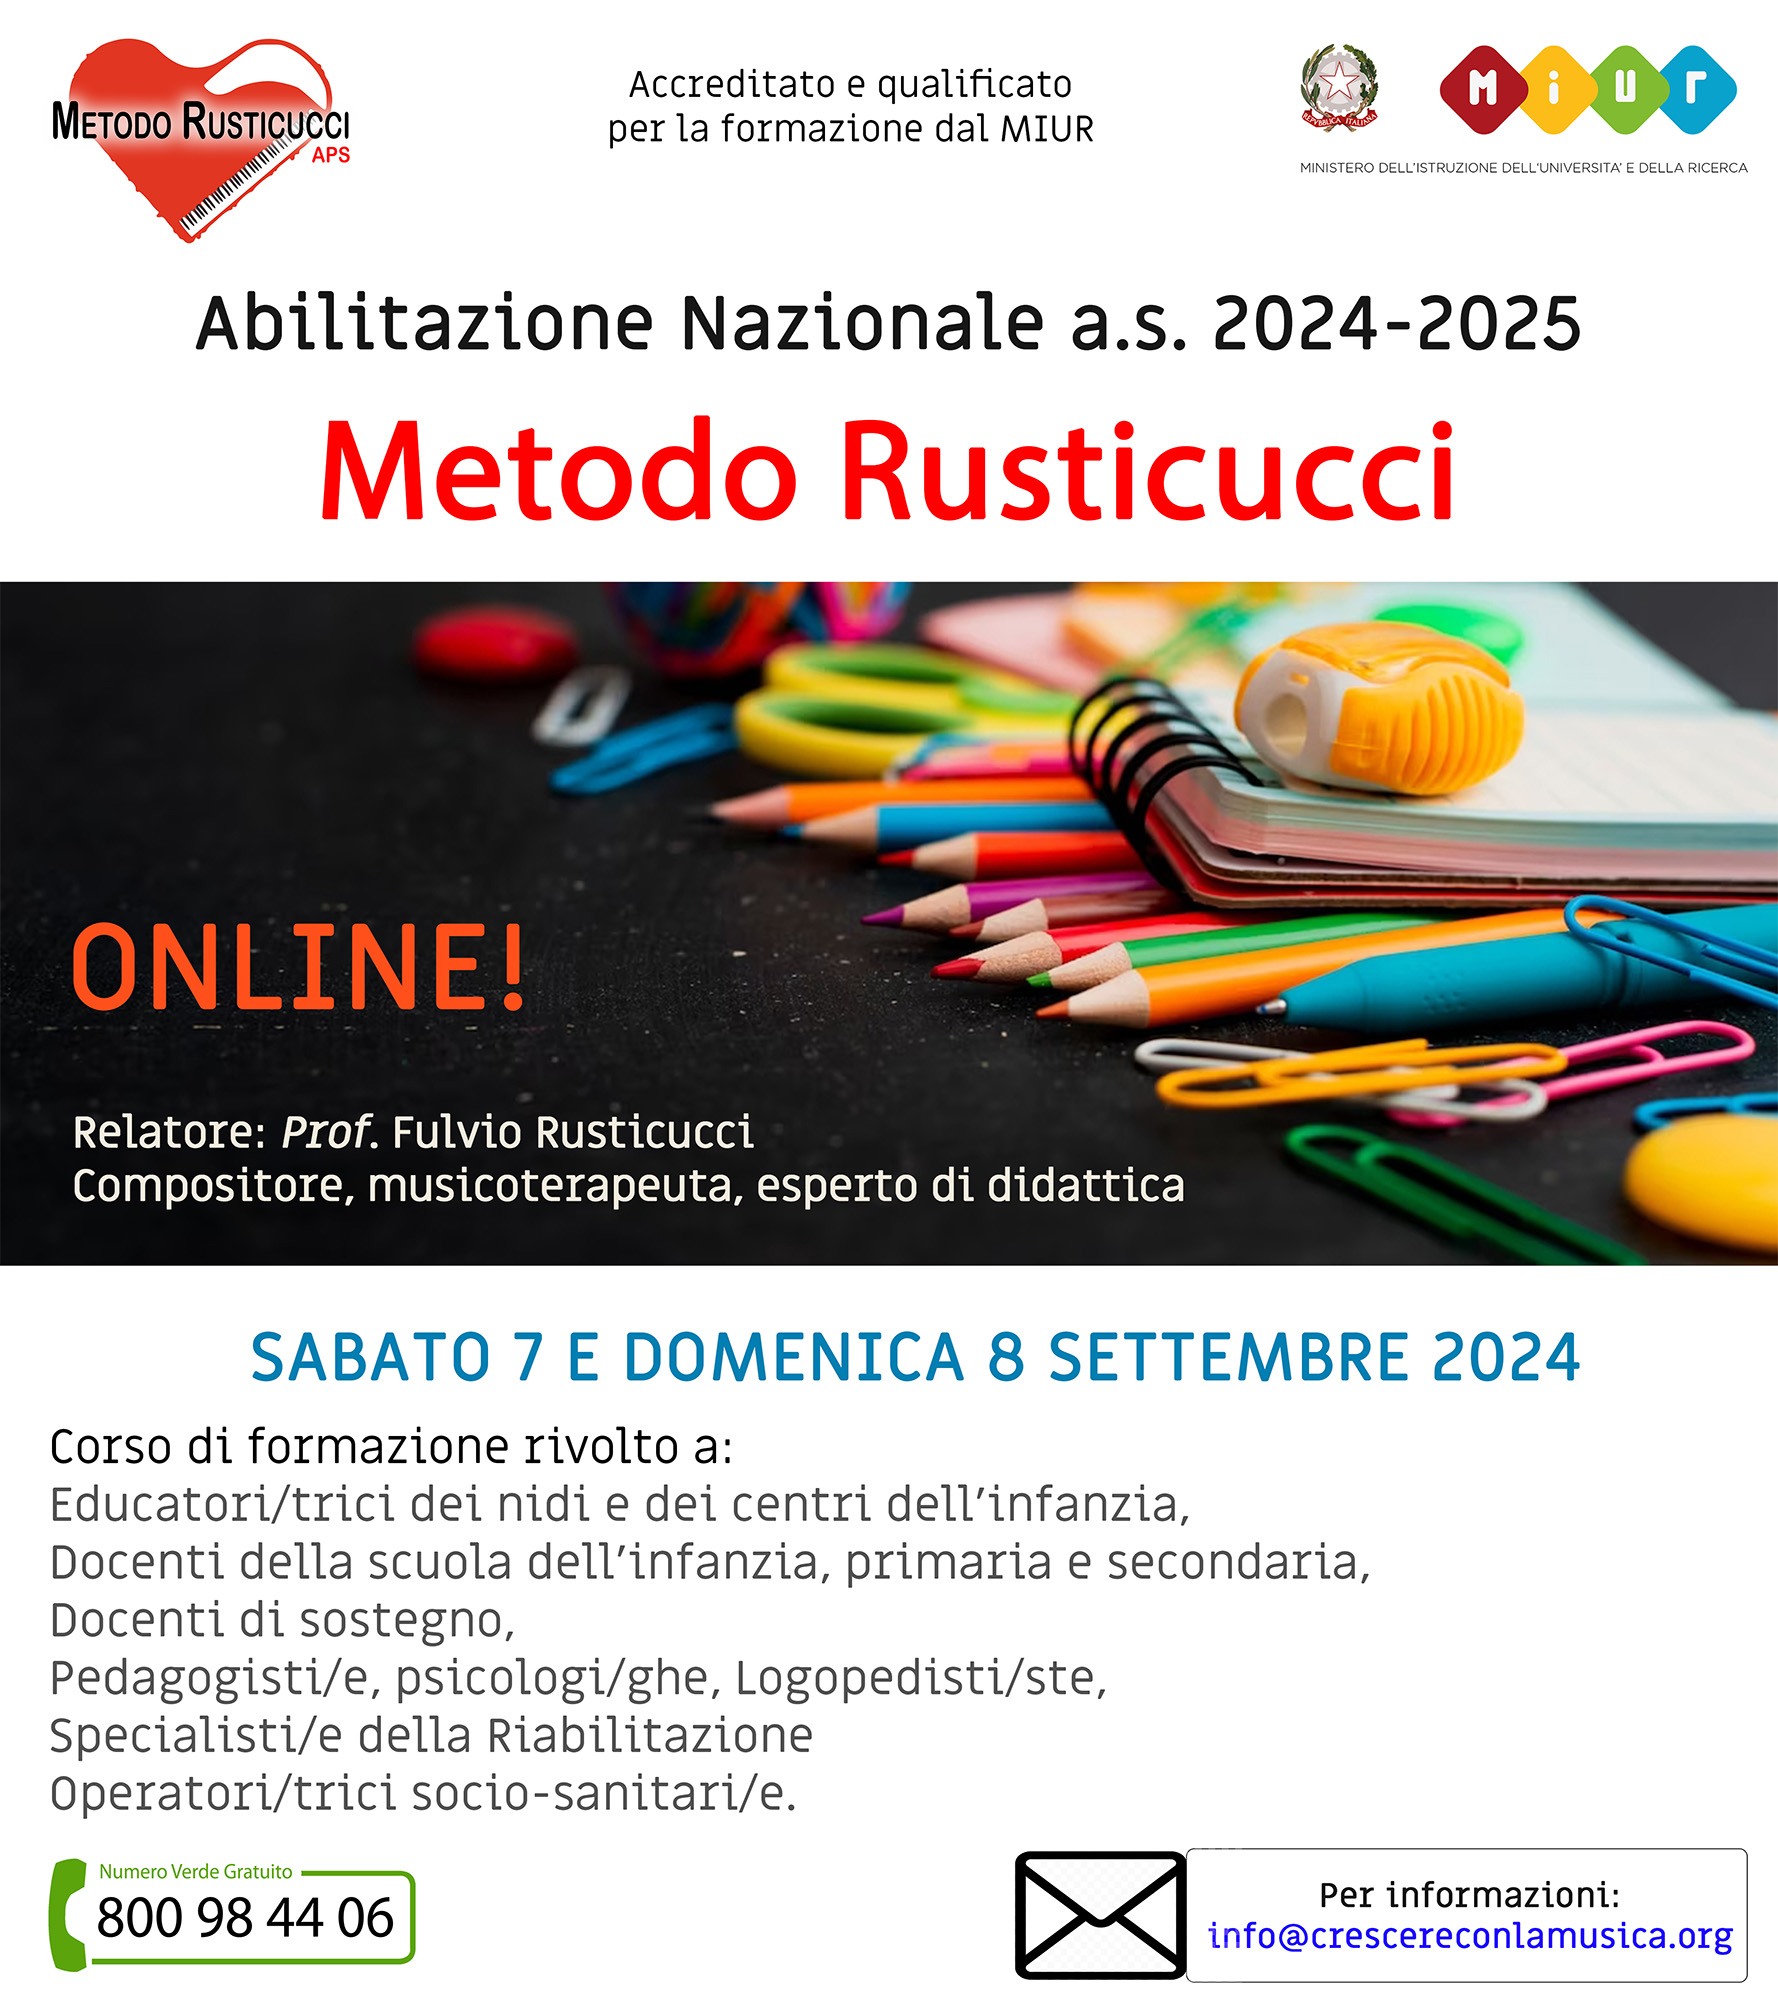 Abilitazione Nazionale Online al Metodo Rusticucci – A.S. 2024-2025